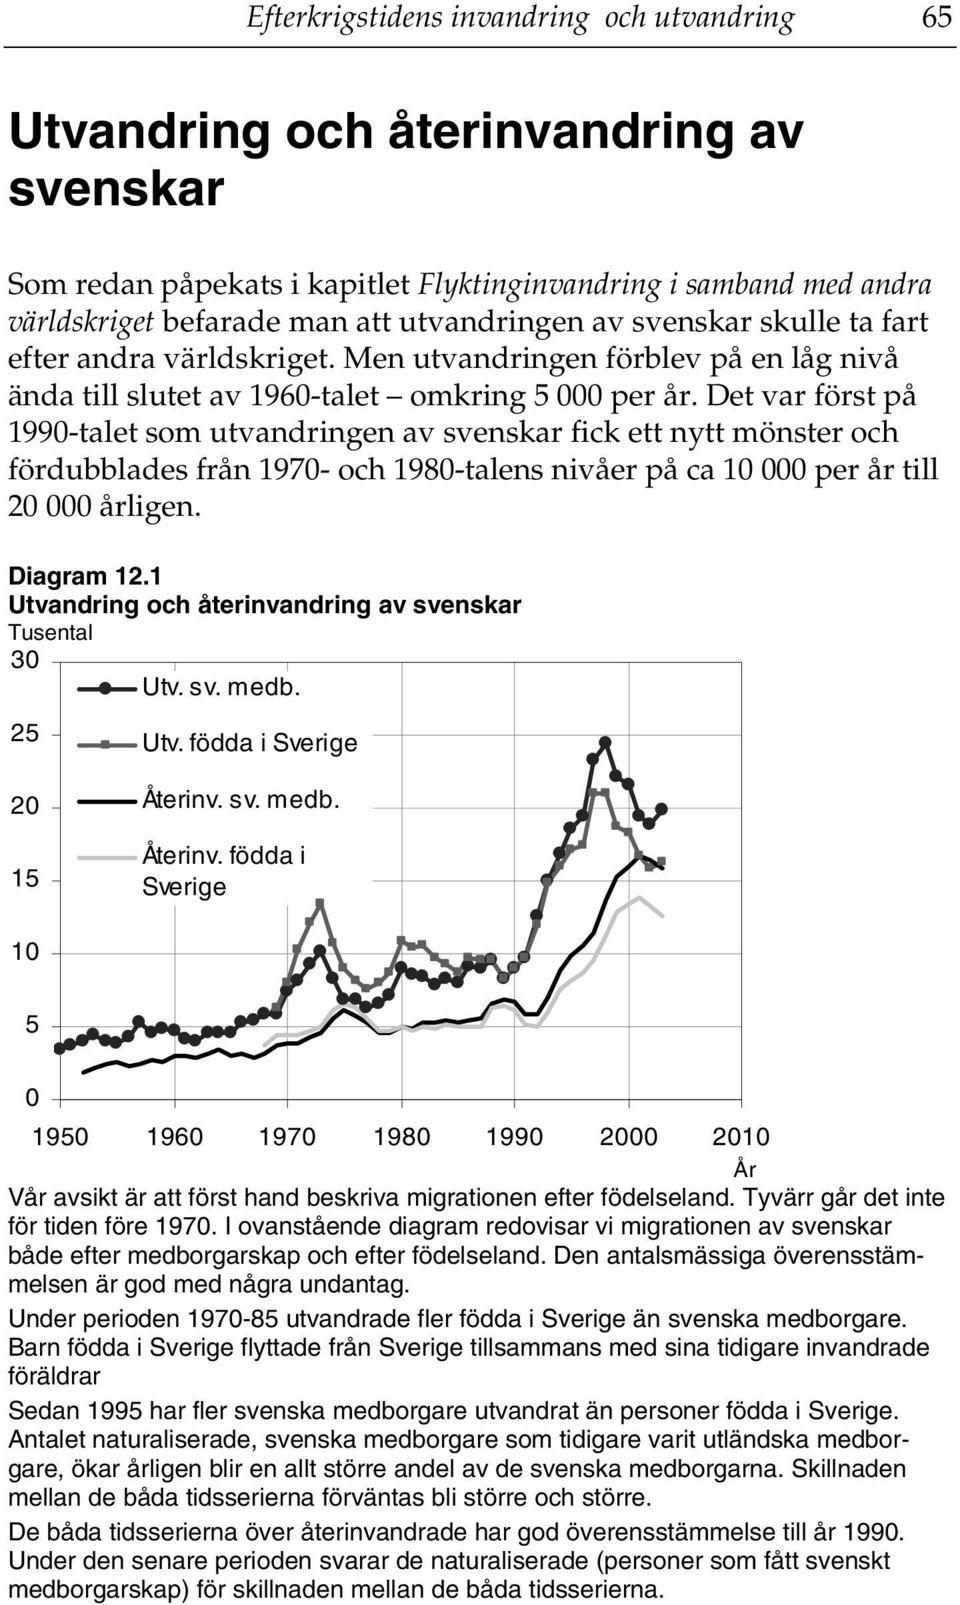 Det var först på 1990-talet som utvandringen av svenskar fick ett nytt mönster och fördubblades från 1970- och 1980-talens nivåer på ca 10 000 per år till 20 000 årligen. Diagram 12.